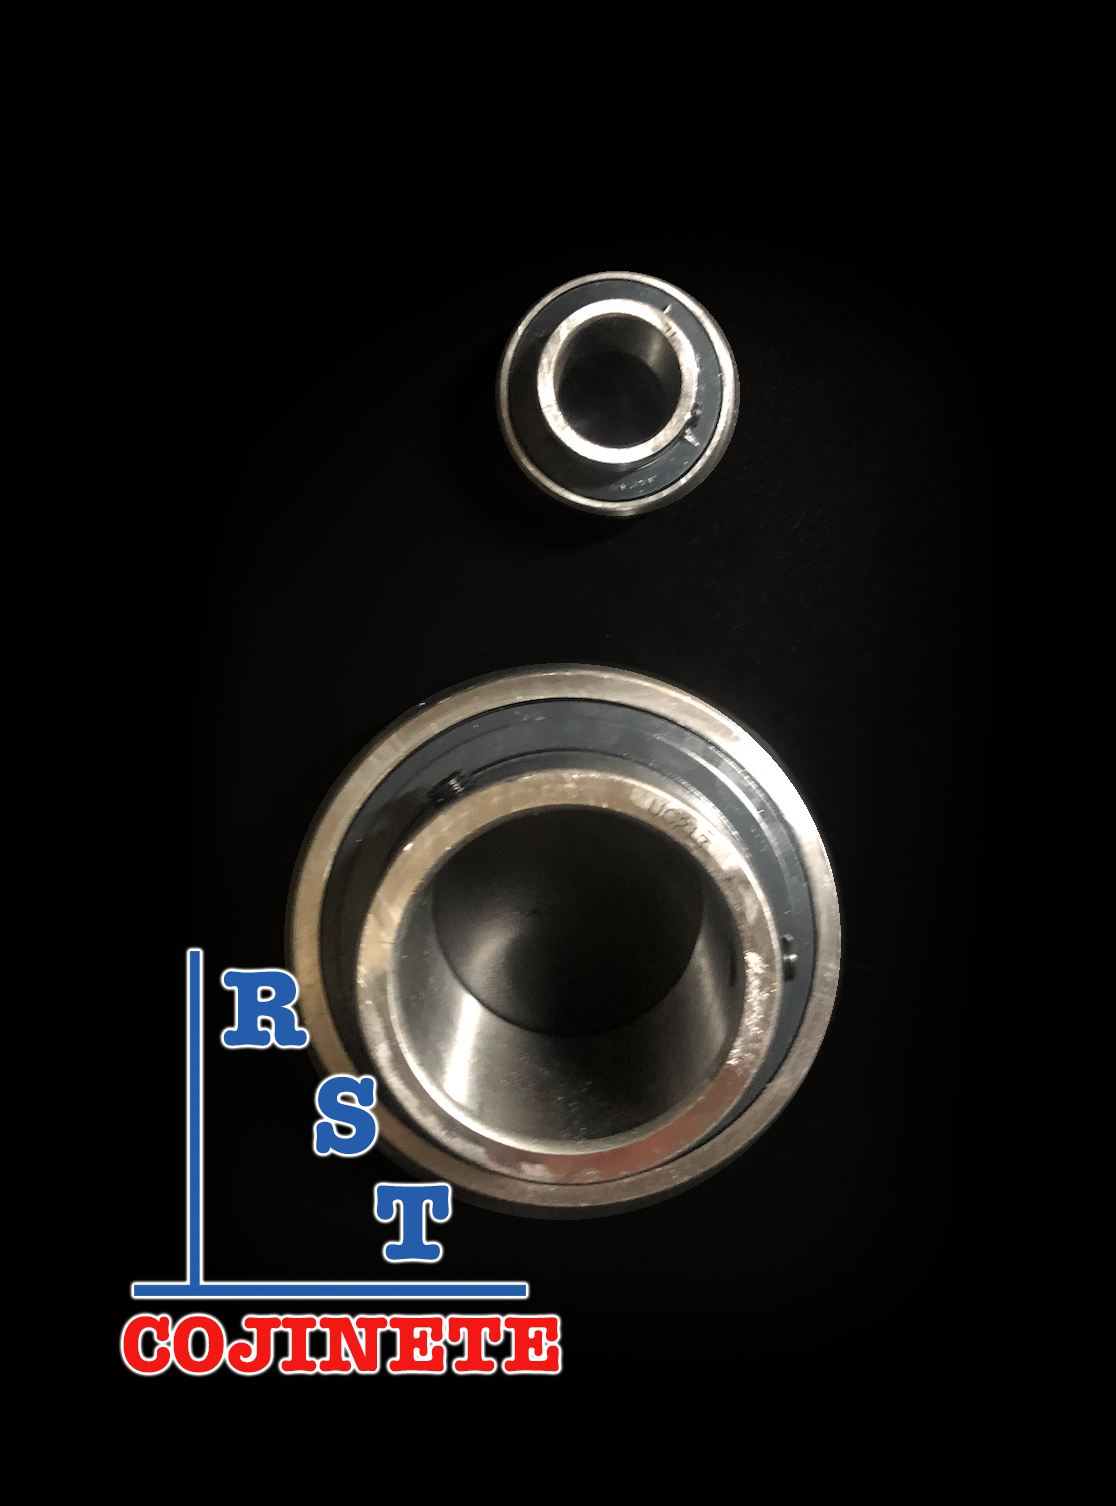 Cojinete insertable UC213 | Rodamiento para eje de 65mm rígido de bolas con sello de hule para chumacera